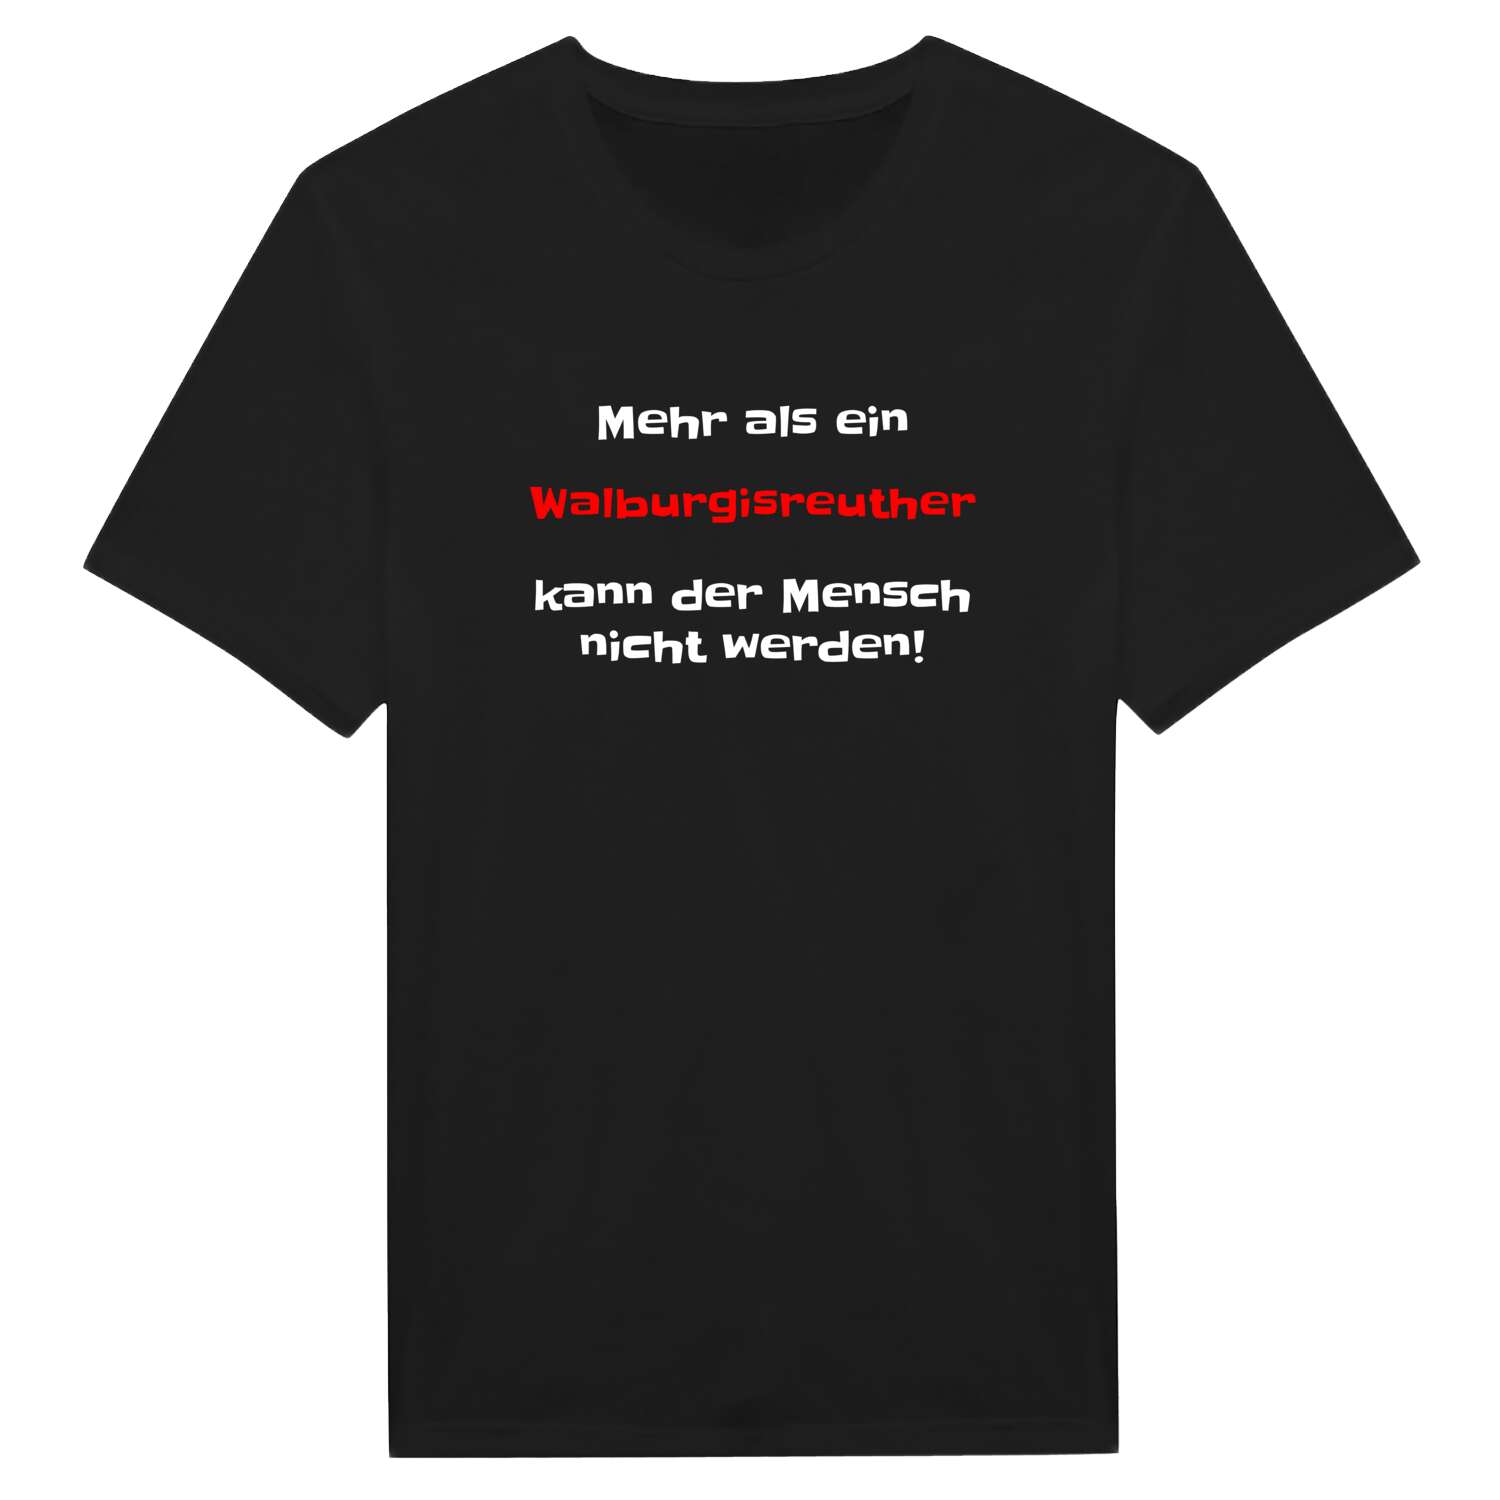 Walburgisreuth T-Shirt »Mehr als ein«